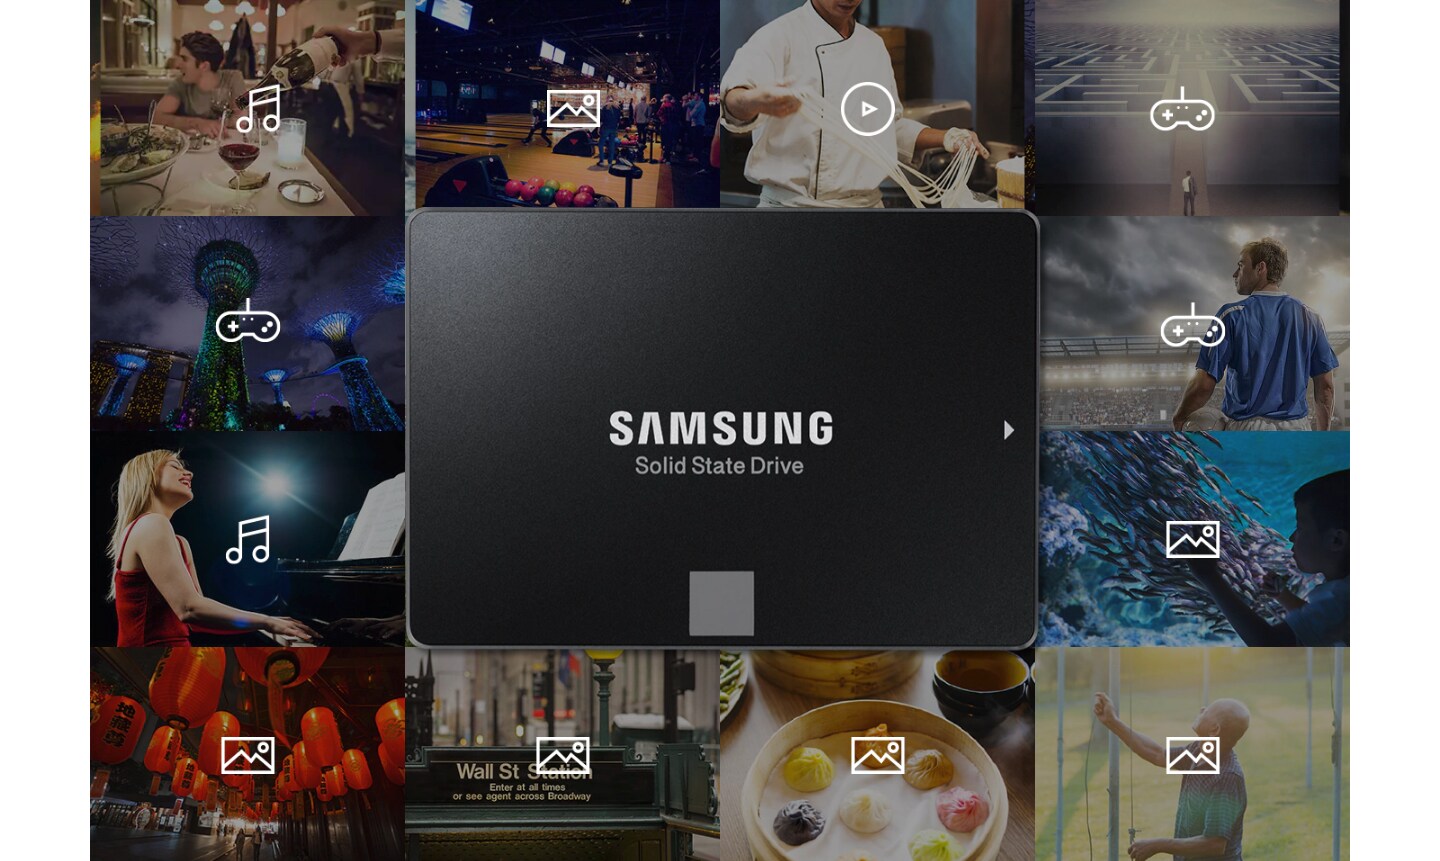 Samsung SSD, çeşitli günlük aktivitelerden kaynaklanan müzik, fotoğraflar, videolar ve oyunlar gibi bilgilerle ilişkilidir (performans, spor, yemek pişirme, yemek, açık hava etkinlikleri vb.)